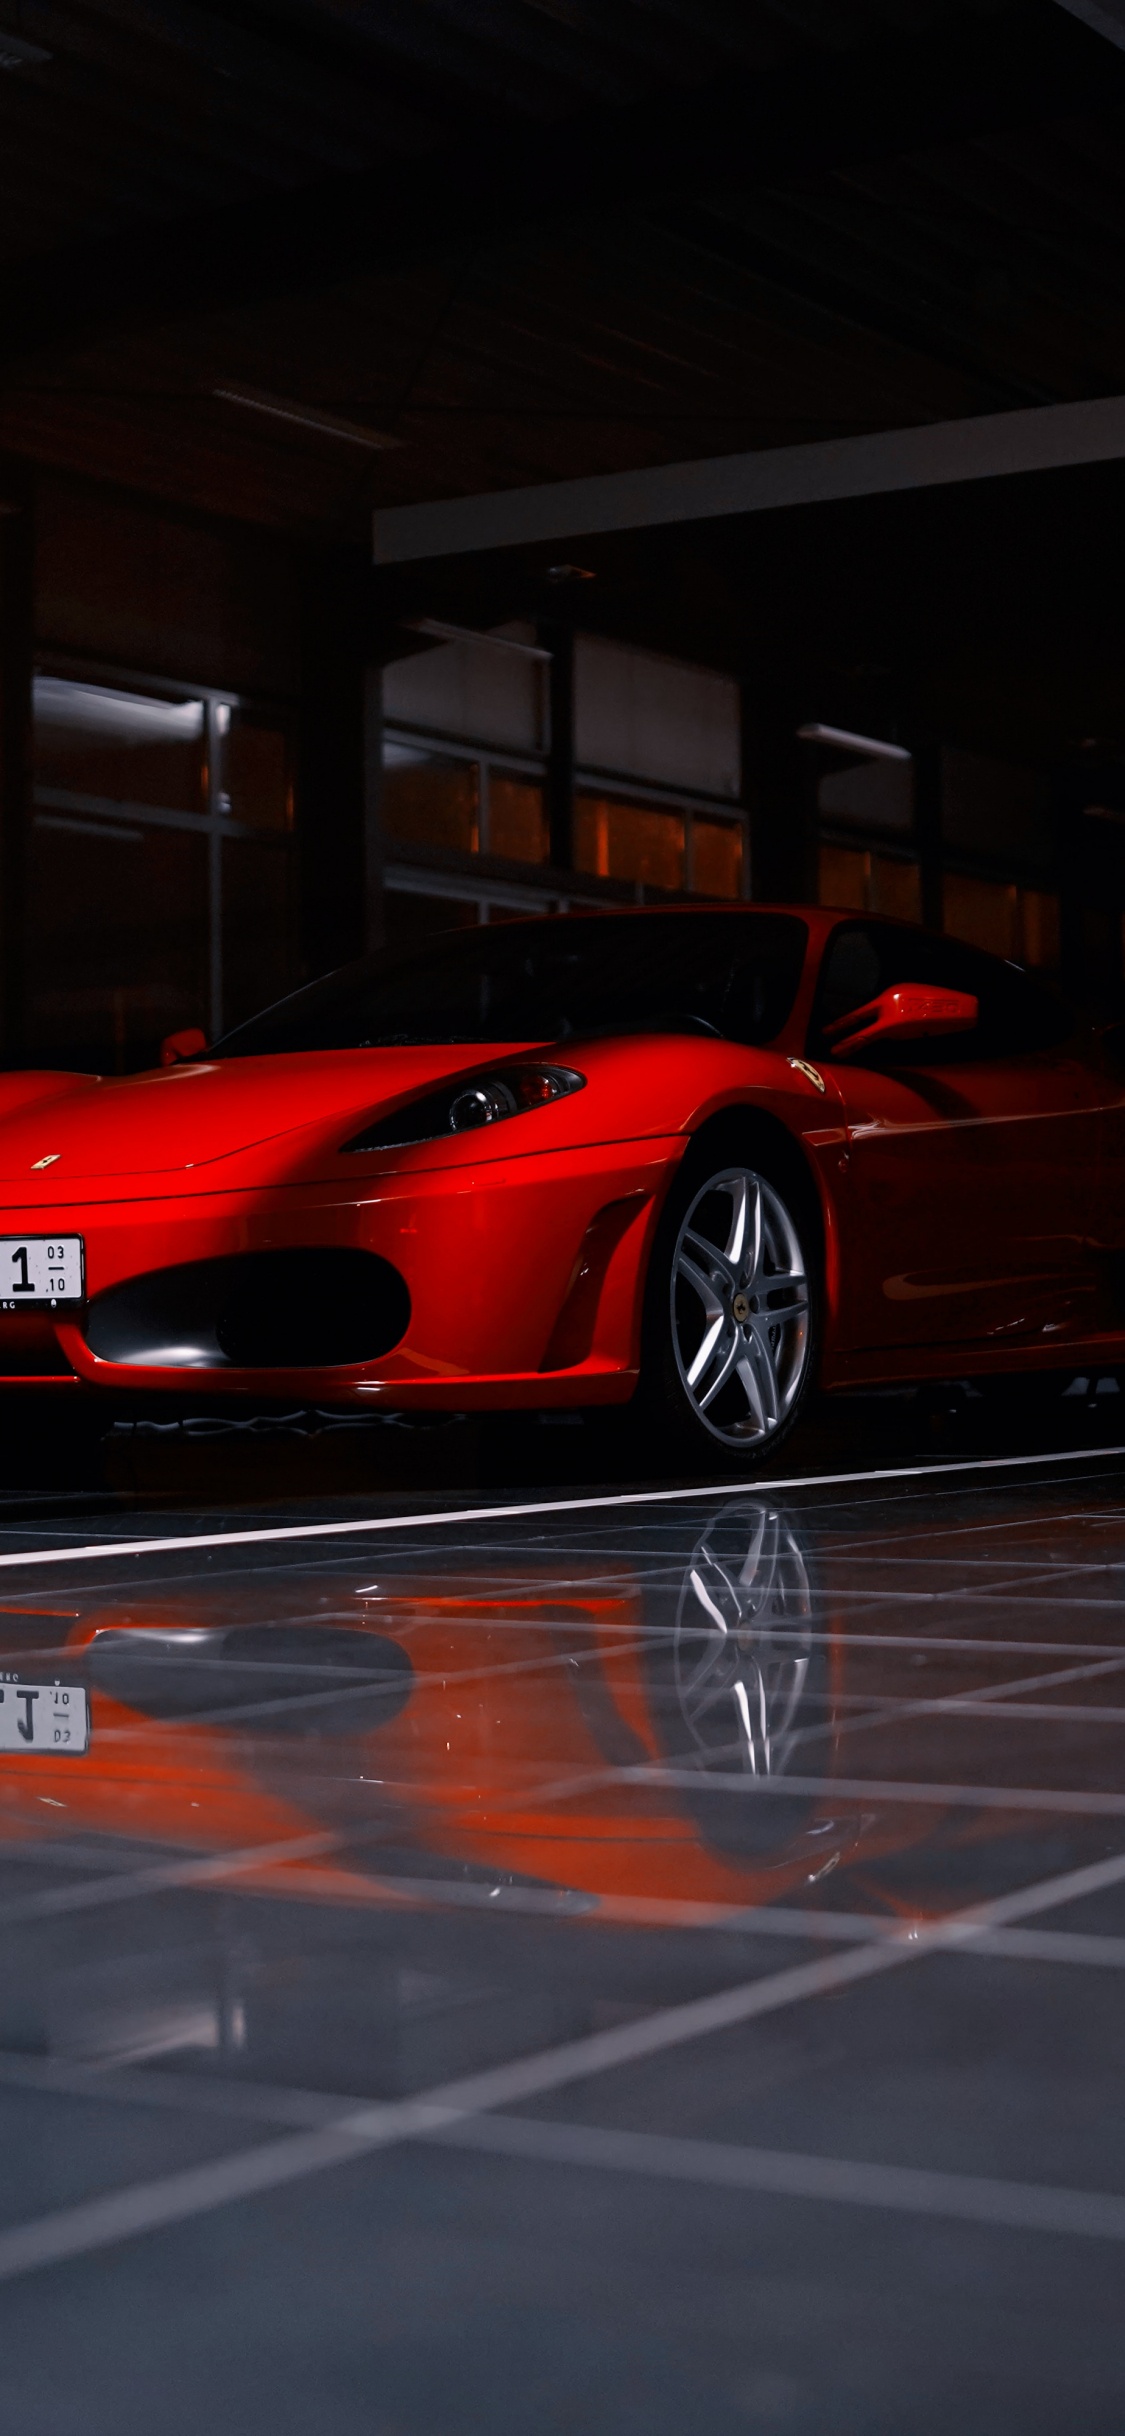 Roter Ferrari 458 Italia Auf Parkplatz Geparkt. Wallpaper in 1125x2436 Resolution